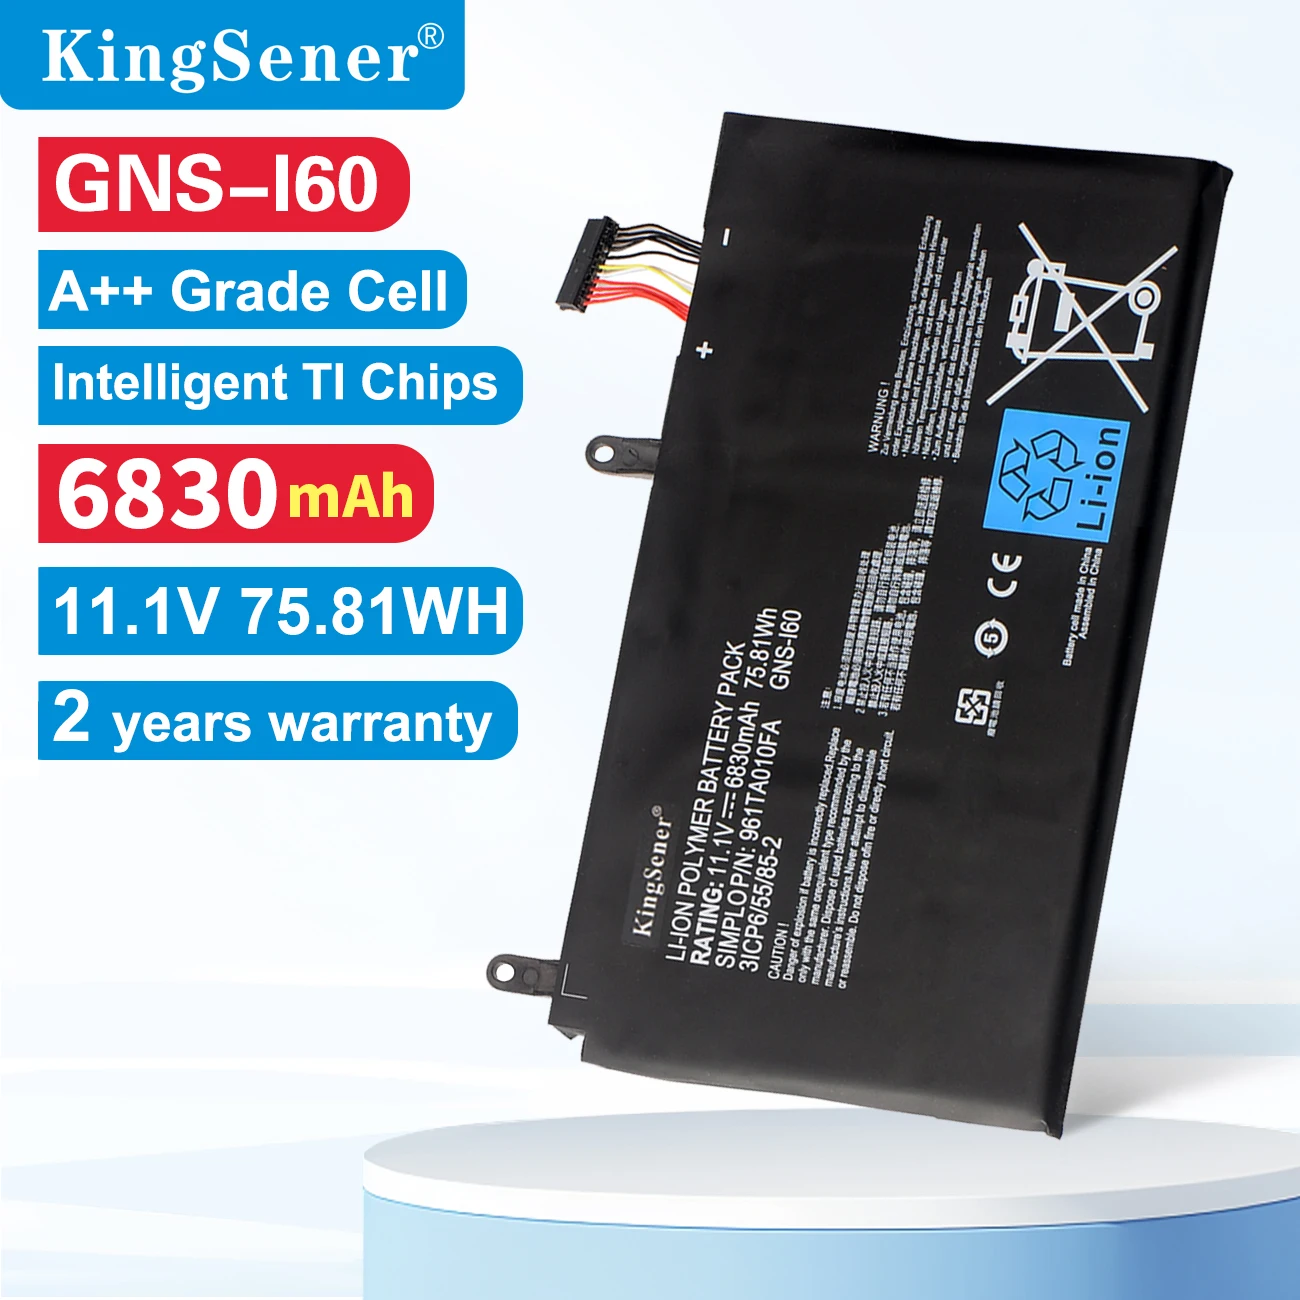 

KingSener New GNS-I60 Laptop Battery For GIGABYTE P35K P37X P57X P35G P35N P35W P35X P37W P57W 961TA010FA 31CP6/55/85-2 GNS-160